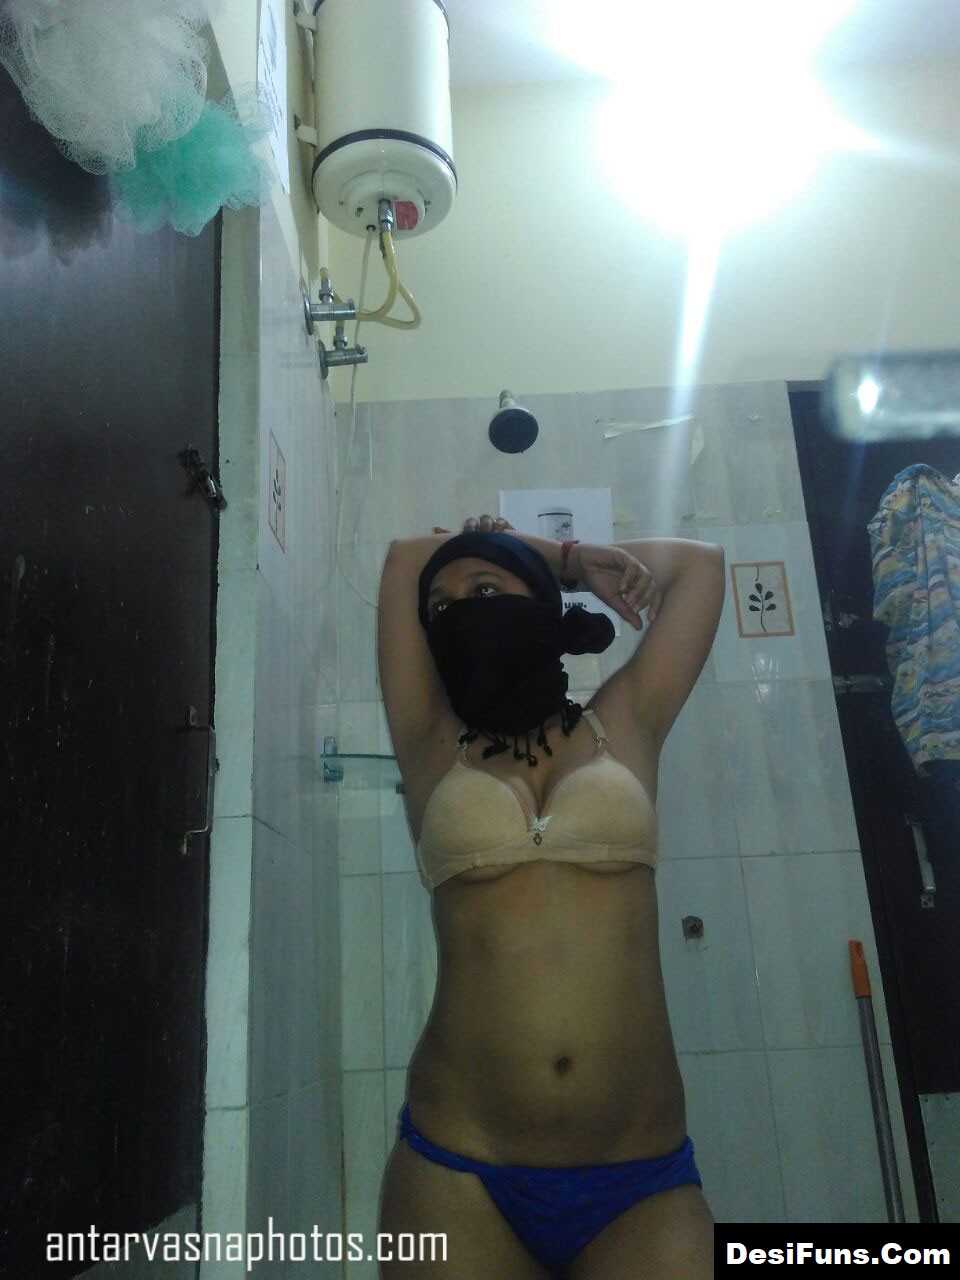 Latest Delhi Sex Chat Ki Indian Model Ki Nude Photos Desifuns Com